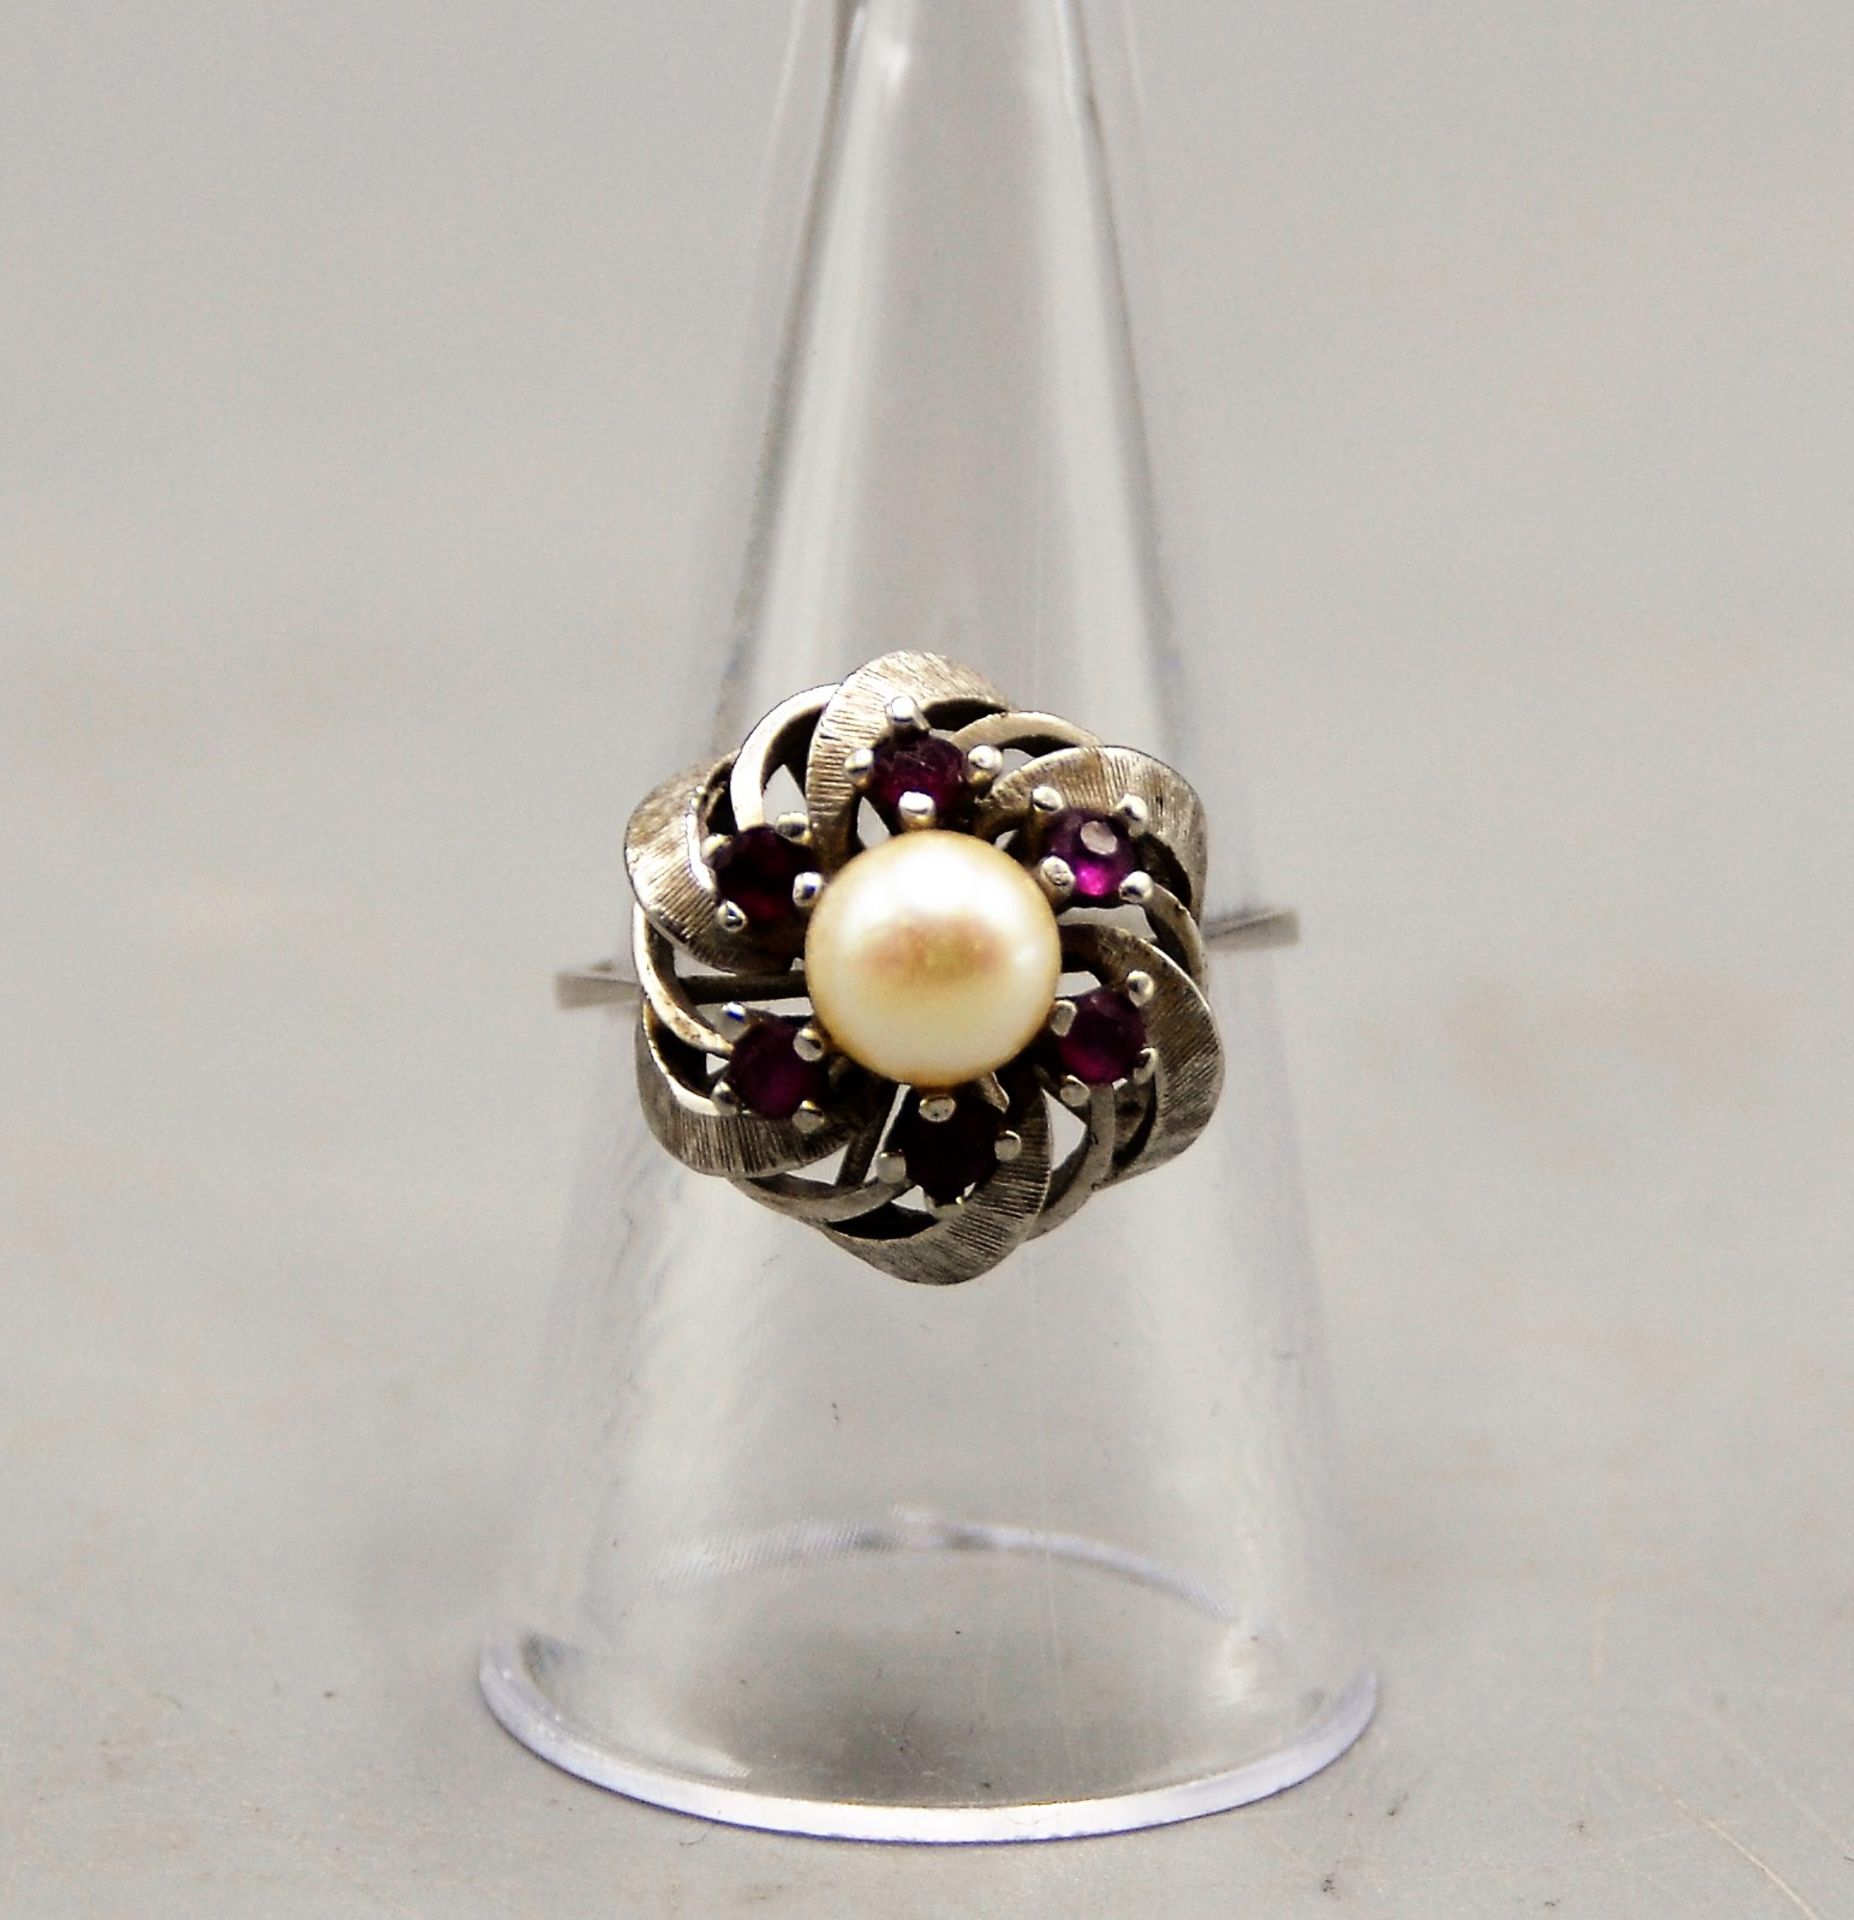 Damenring Weißgold 585 mit Perle u. kleinen Rubinen, Ø ca. 18 mm, 4,2 g